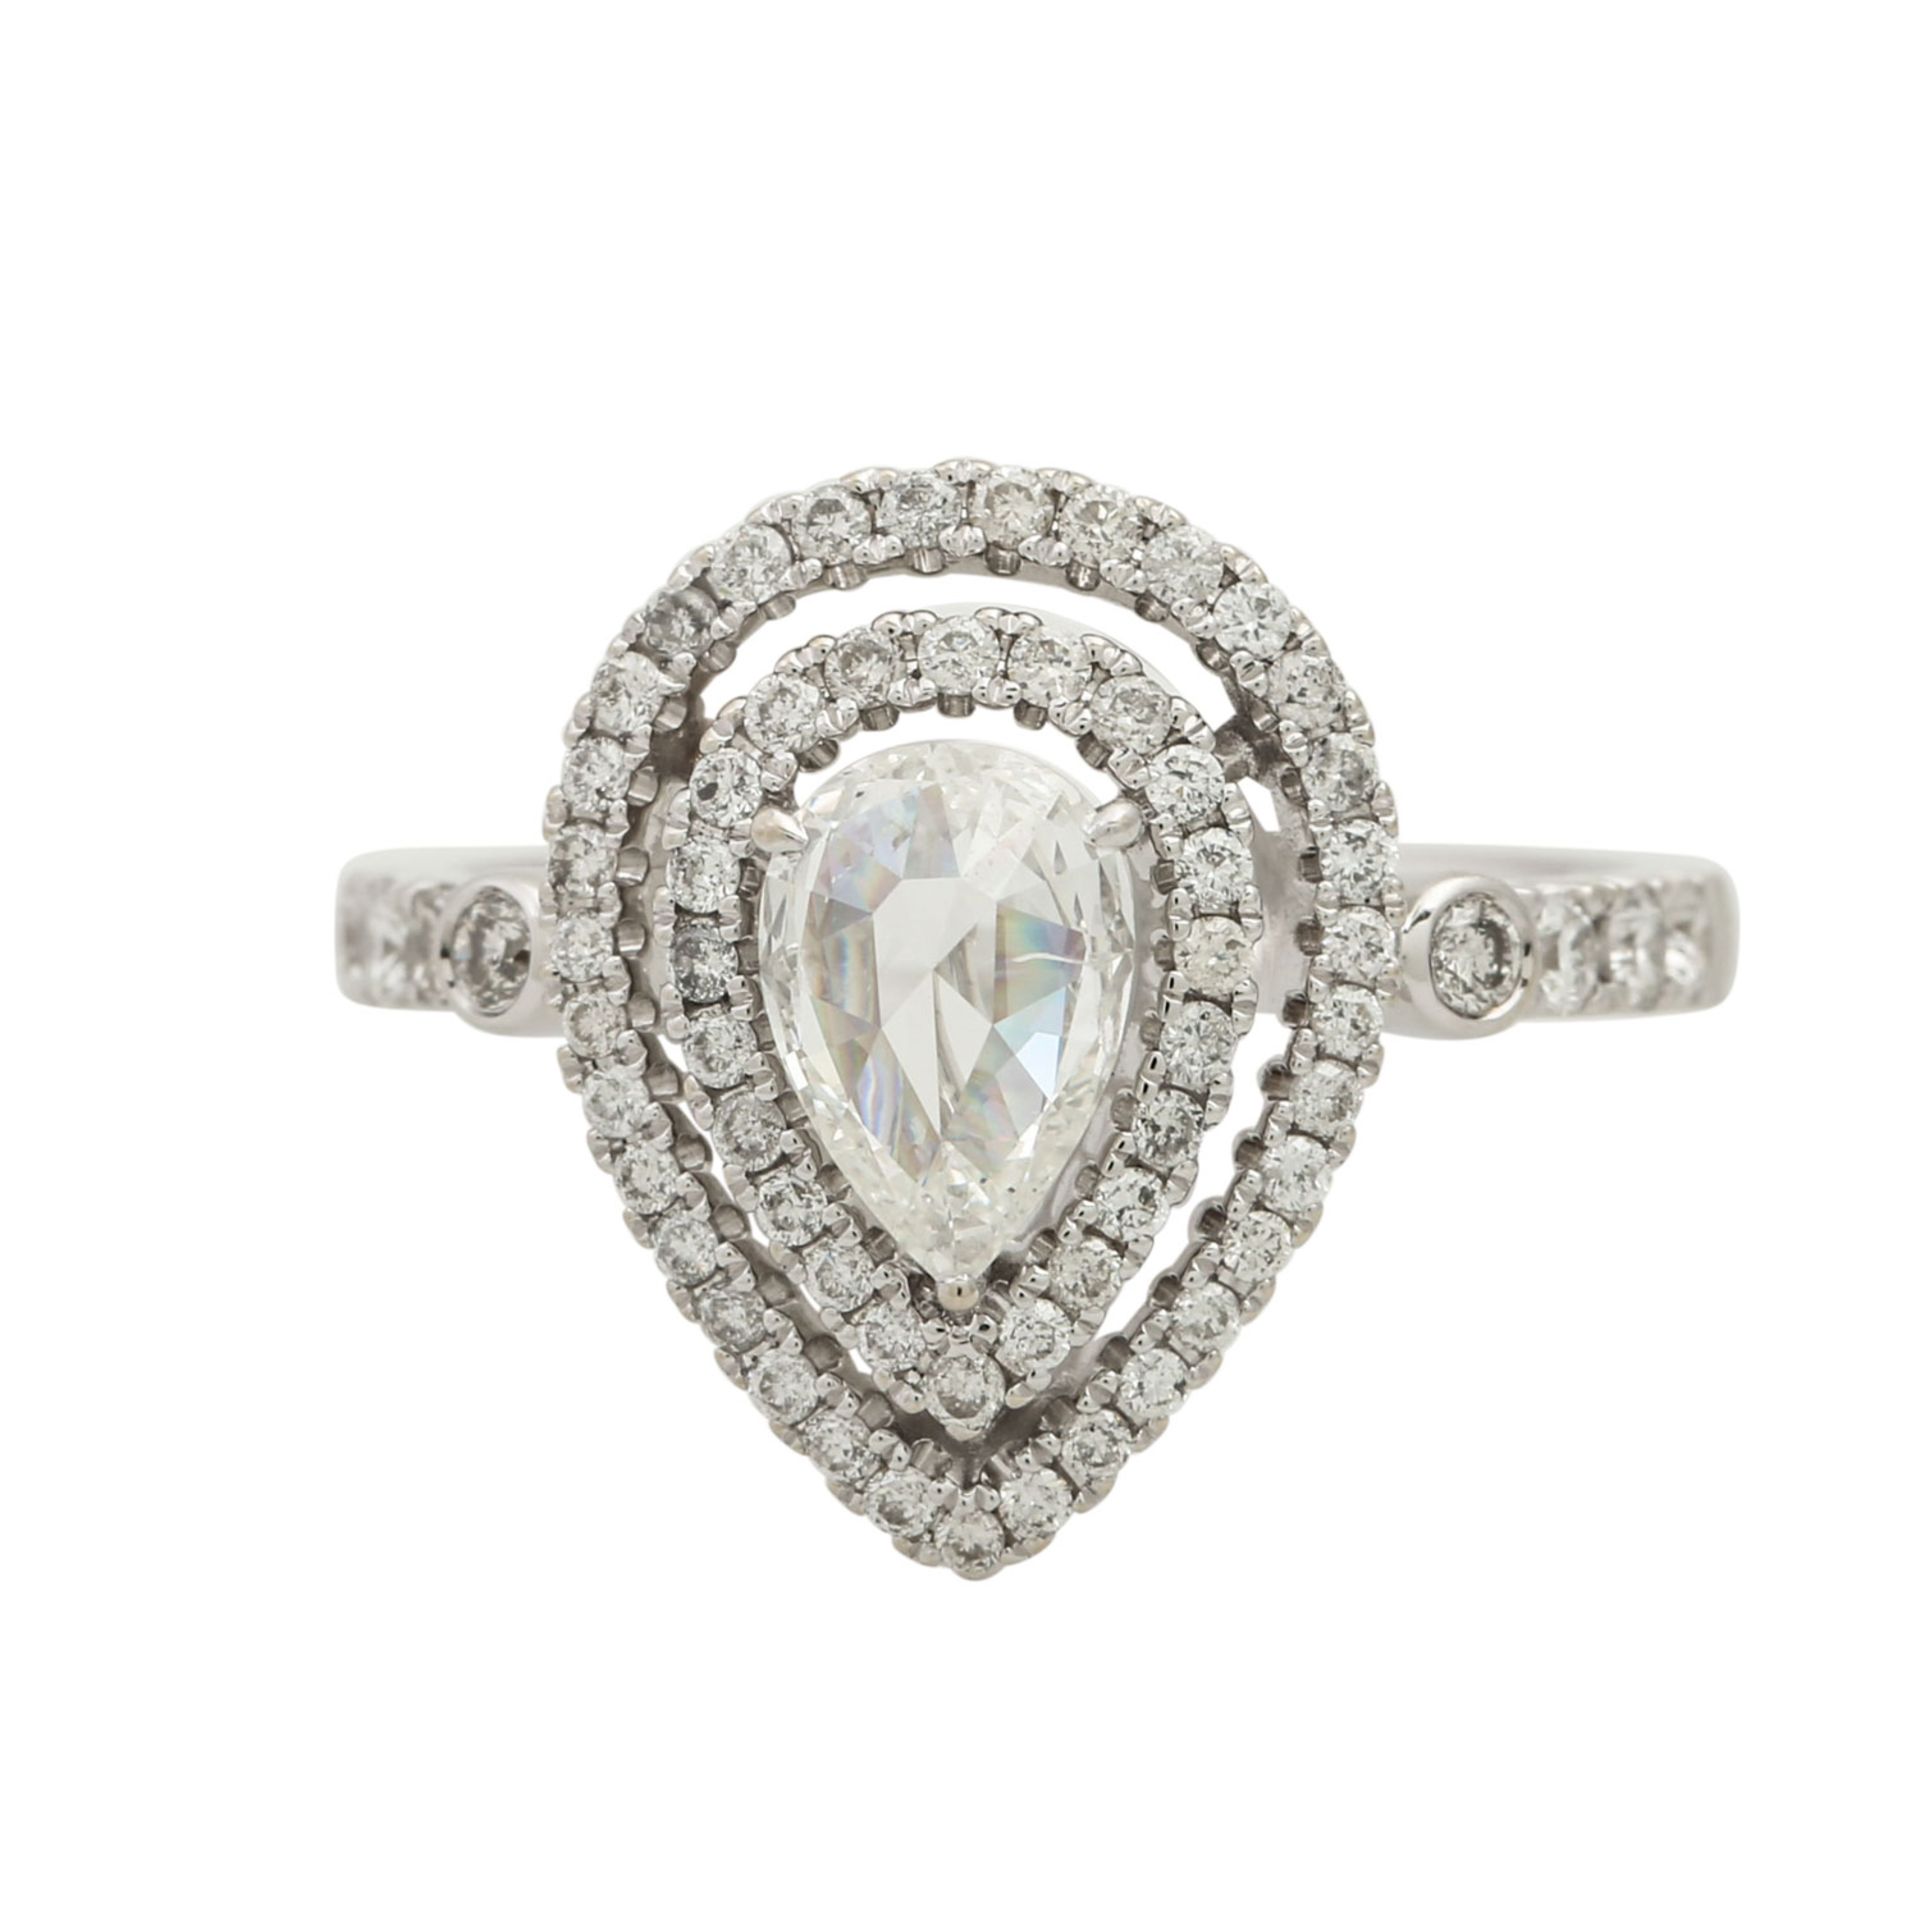 Ring mit Diamanttropfen ca. 0,71 ct,Rosenschliff, ca. LGW (I-J)/P1, weitere kleine Bri - Bild 2 aus 4